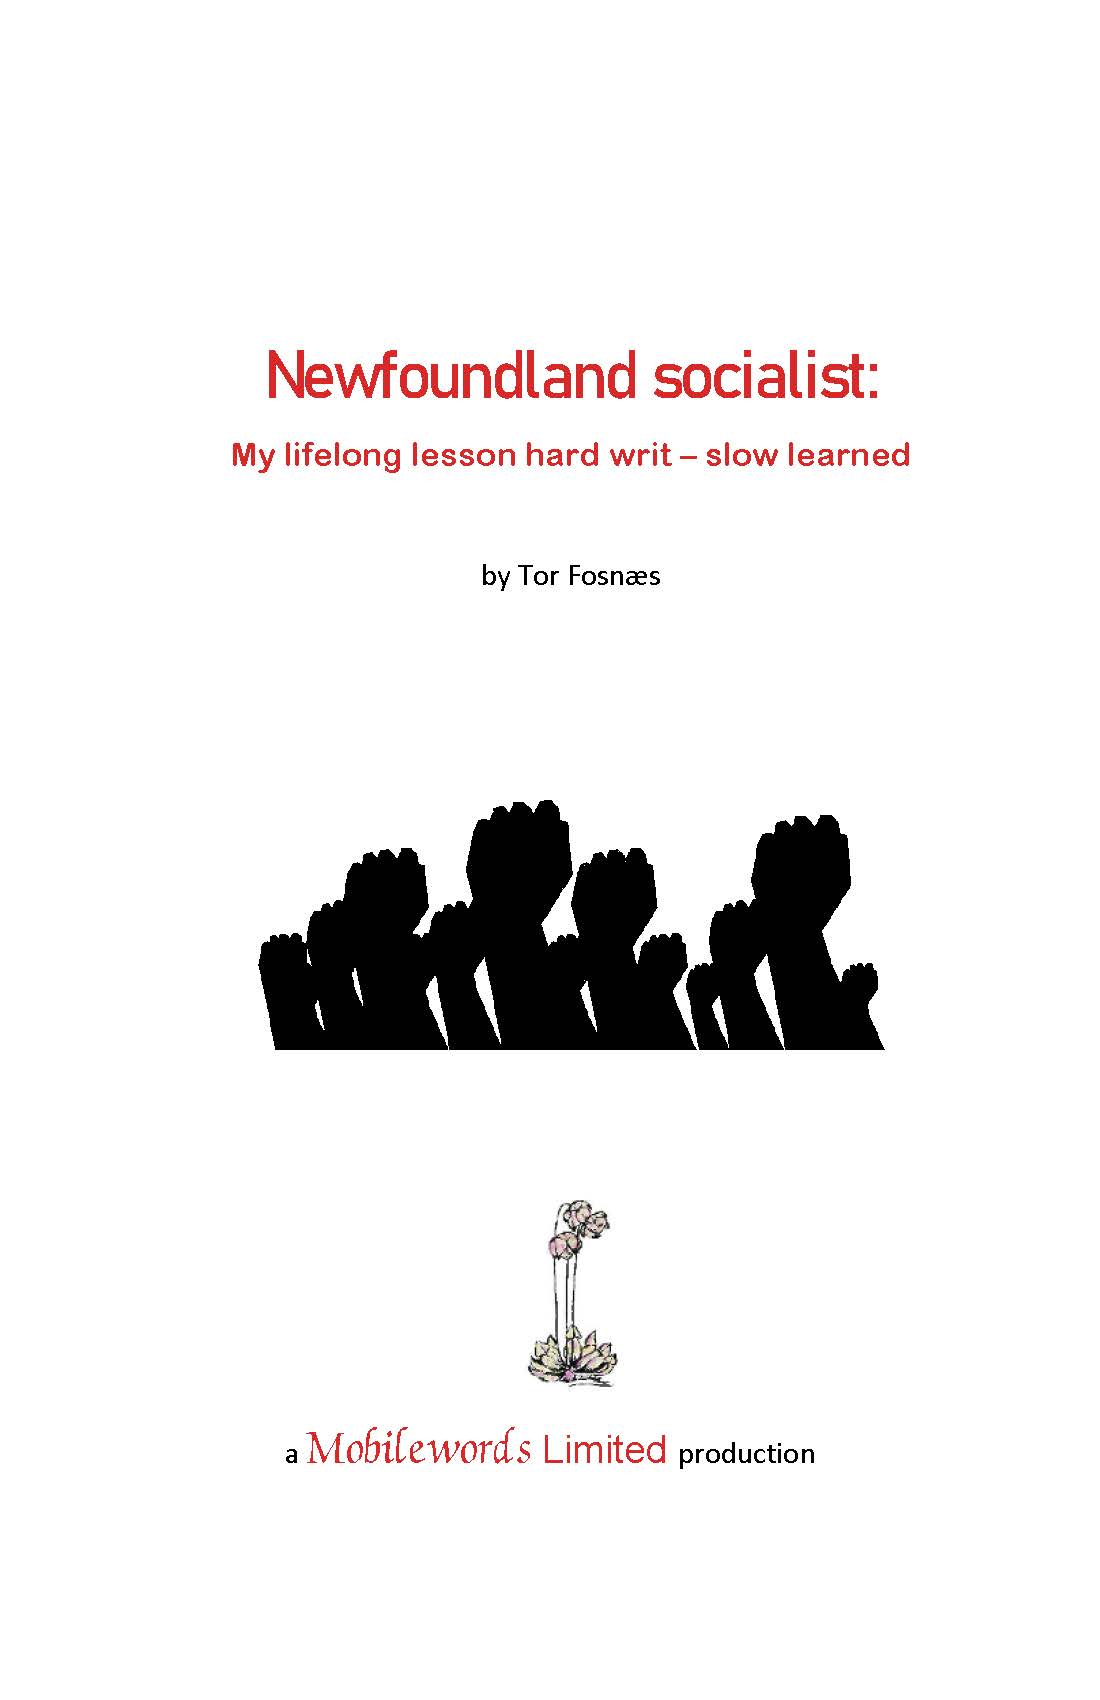 Memoir of a failed socialist